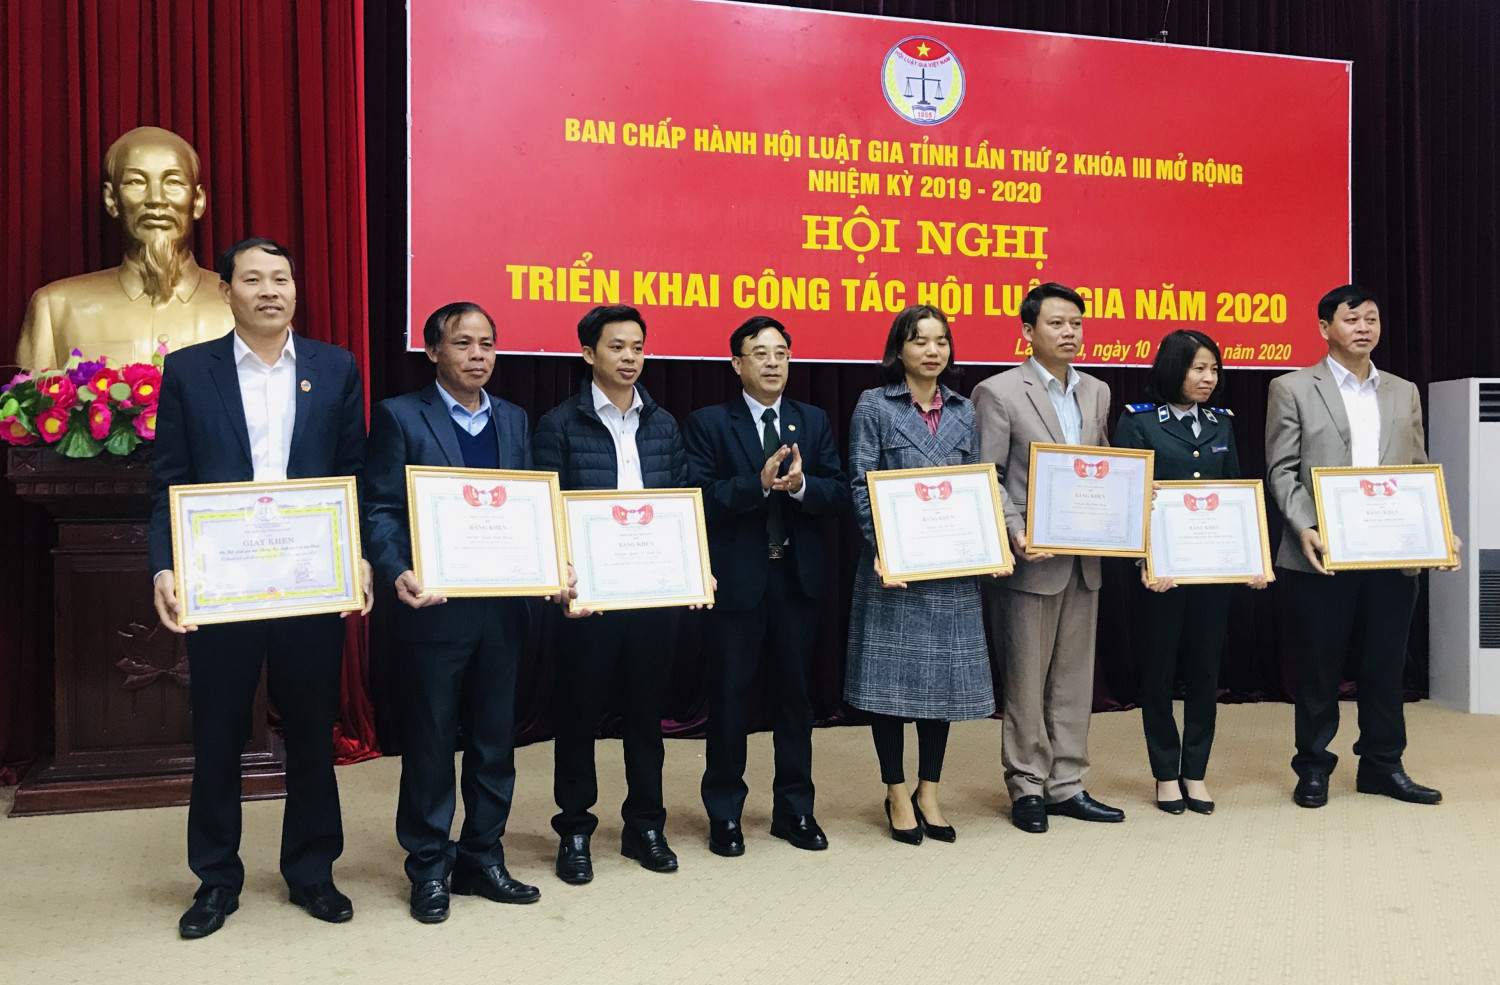 Thừa ủy quyền của Chủ tịch Hội Luật gia Việt Nam, đồng chí Nguyễn Cảnh Phương - Chủ tịch Hội Luật gia tỉnh tặng Bằng khen cho các tập thể có thành tích xuất sắc trong hoạt động Hội năm 2019.